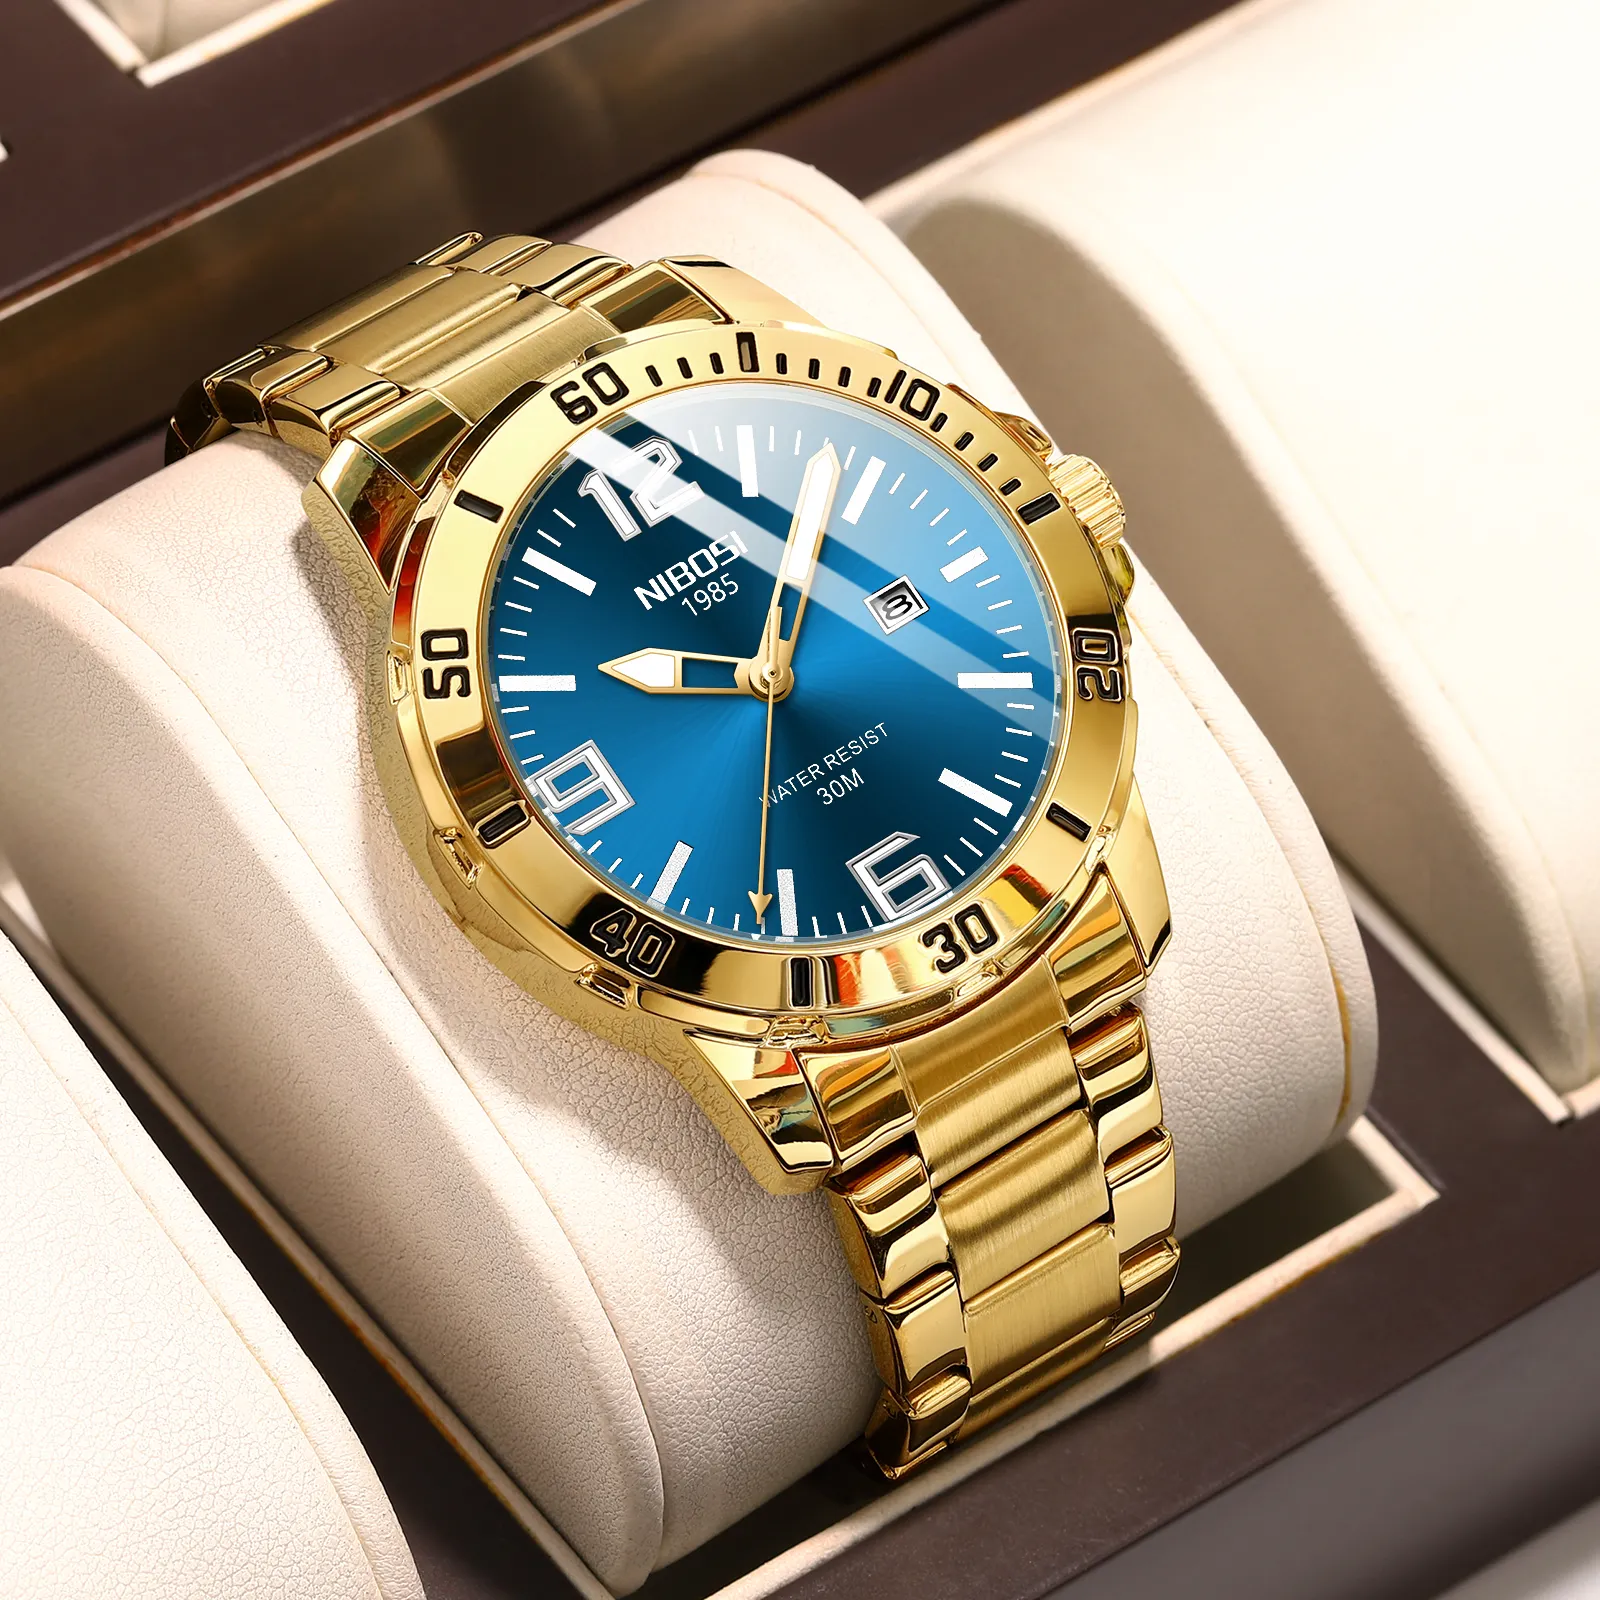 Precio al por mayor NIBOSI marca reloj analógico personalizado para hombre Acero de lujo impermeable luminoso fecha hombres reloj de pulsera Montre Pour Hommes